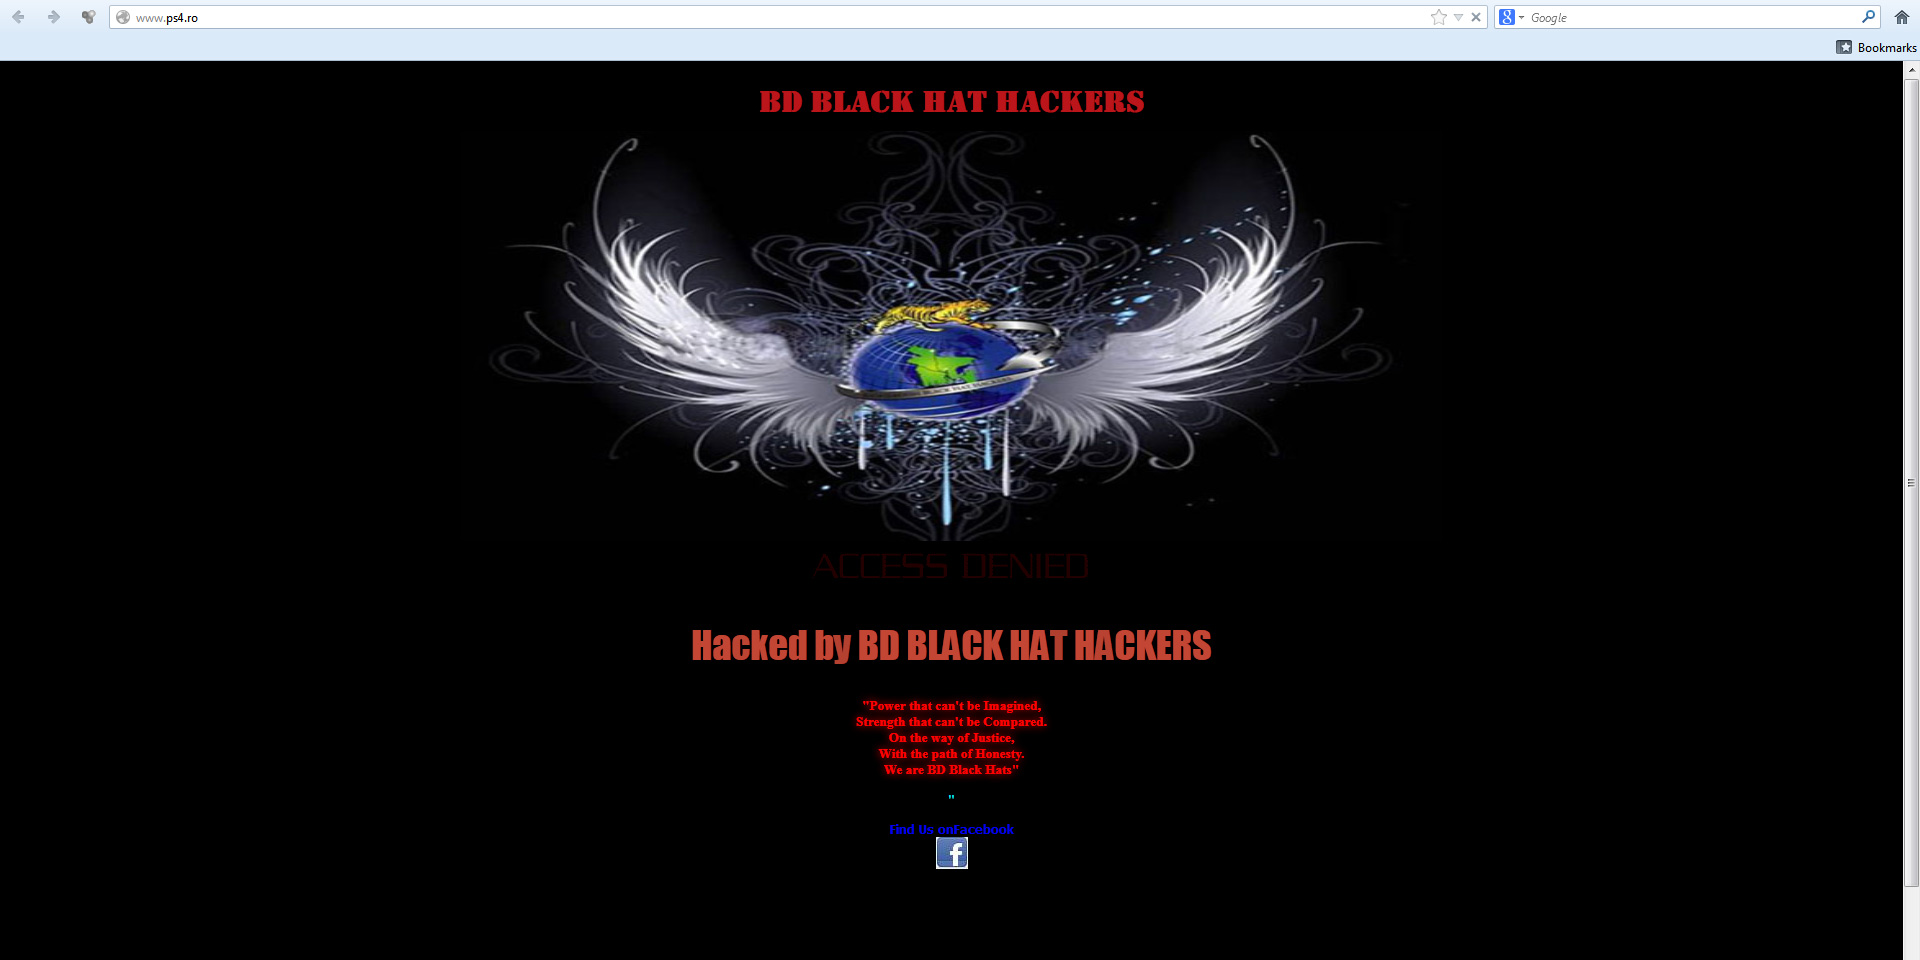 Spart. O grupare de hackeri au atacat serverul care gazduieste site-ul primariei sector 4